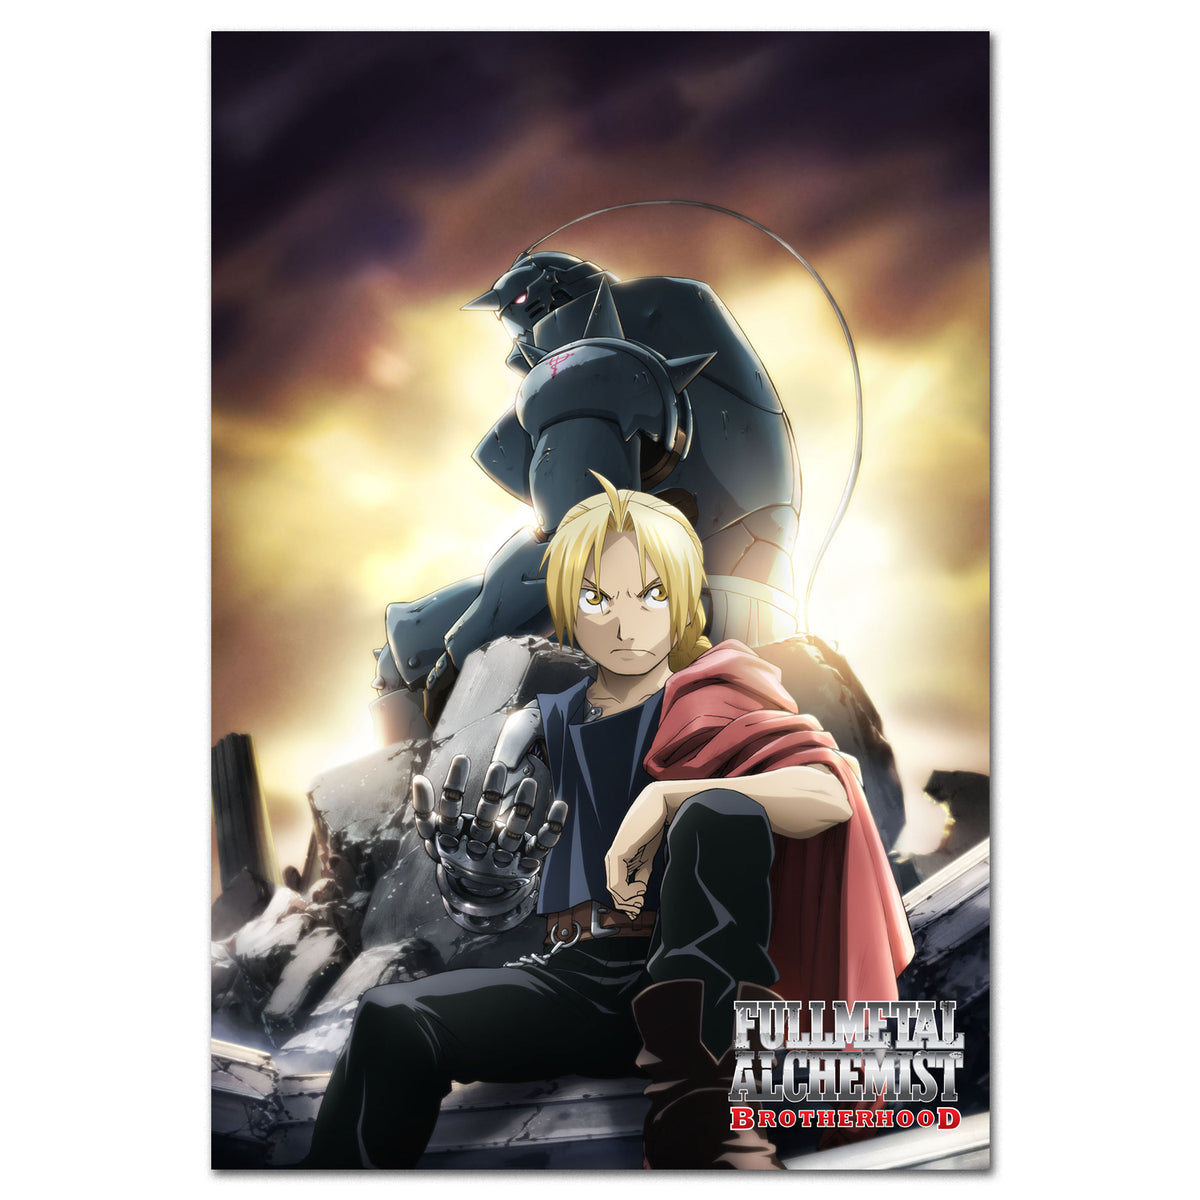 Anime Like Fullmetal Alchemist: Brotherhood